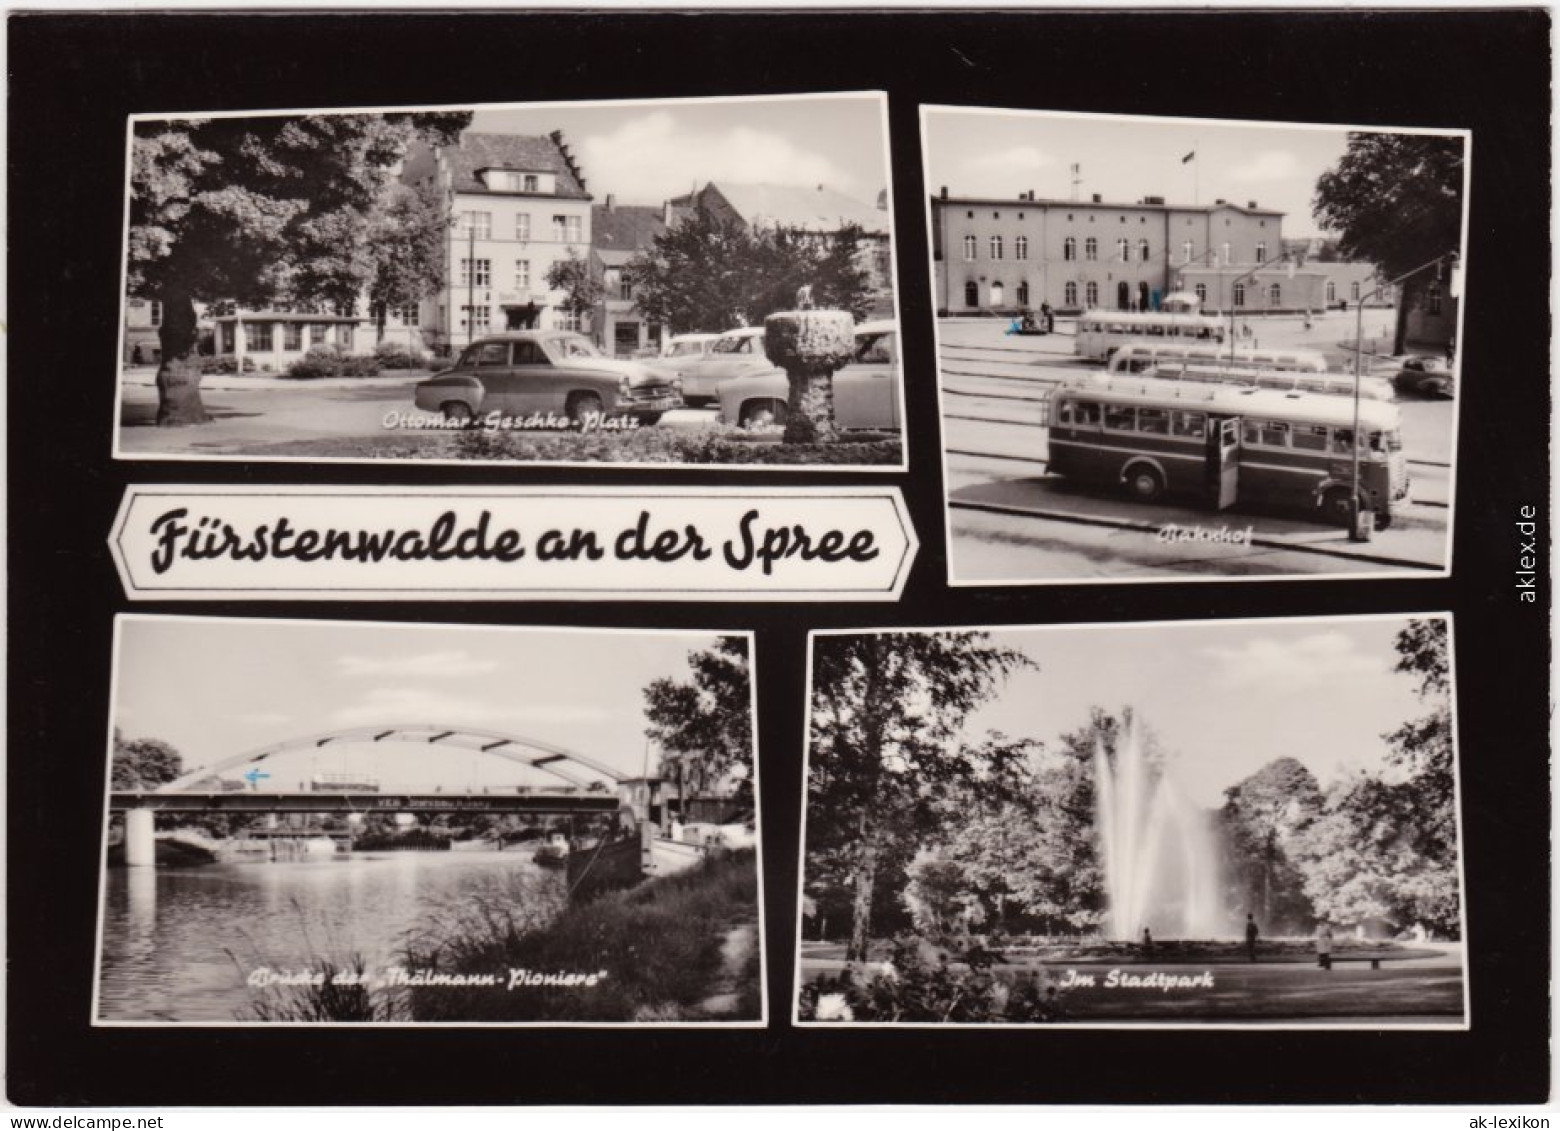 Fürstenwalde Ottomar-Gaschke-Platz, Bahnhof  Autobusse, Brücke 1967 - Fuerstenwalde